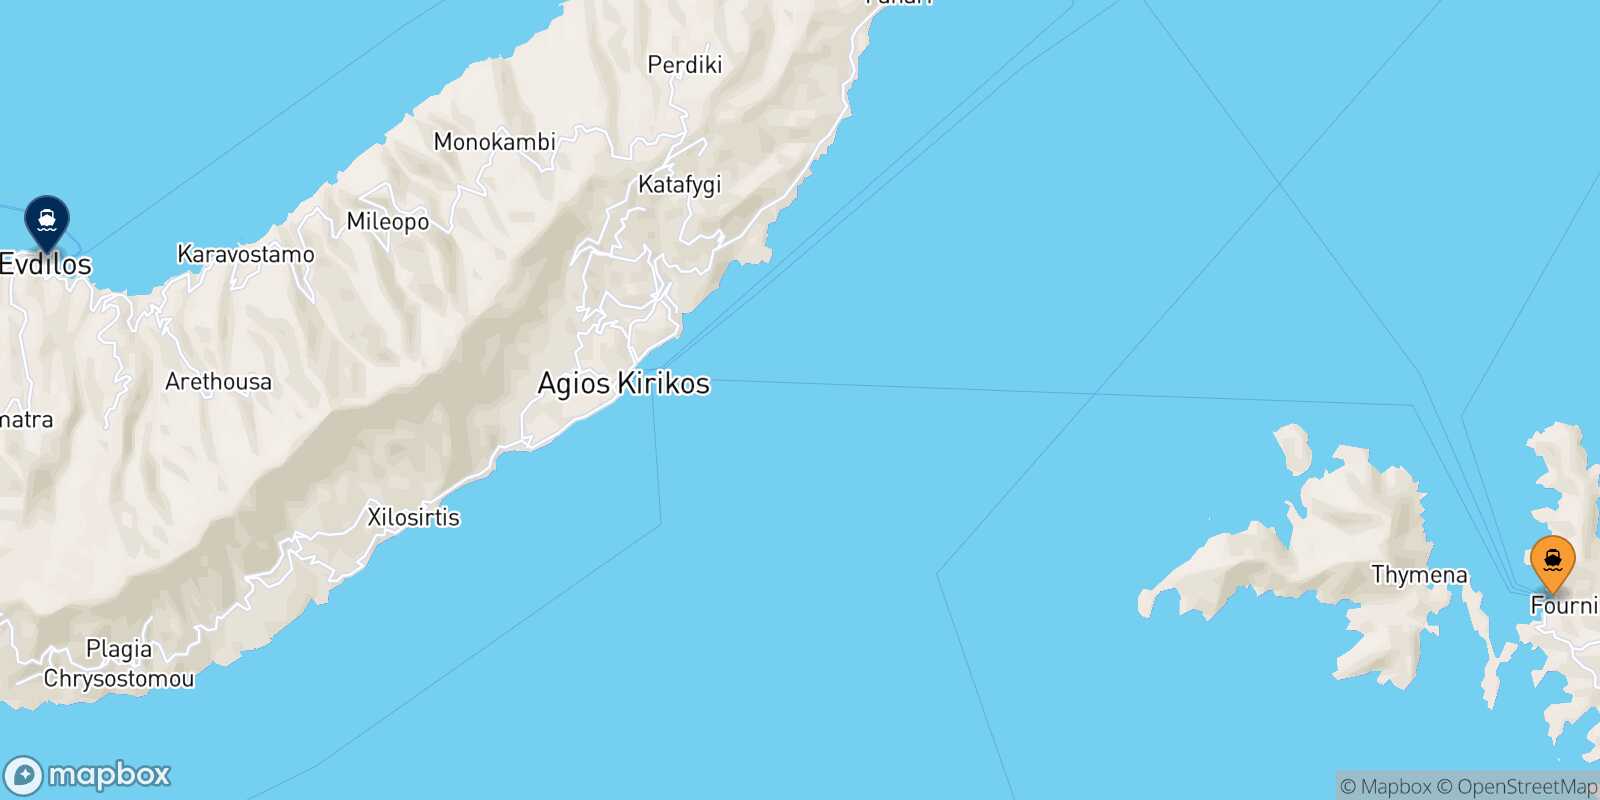 Fourni Agios Kirikos (Ikaria) route map